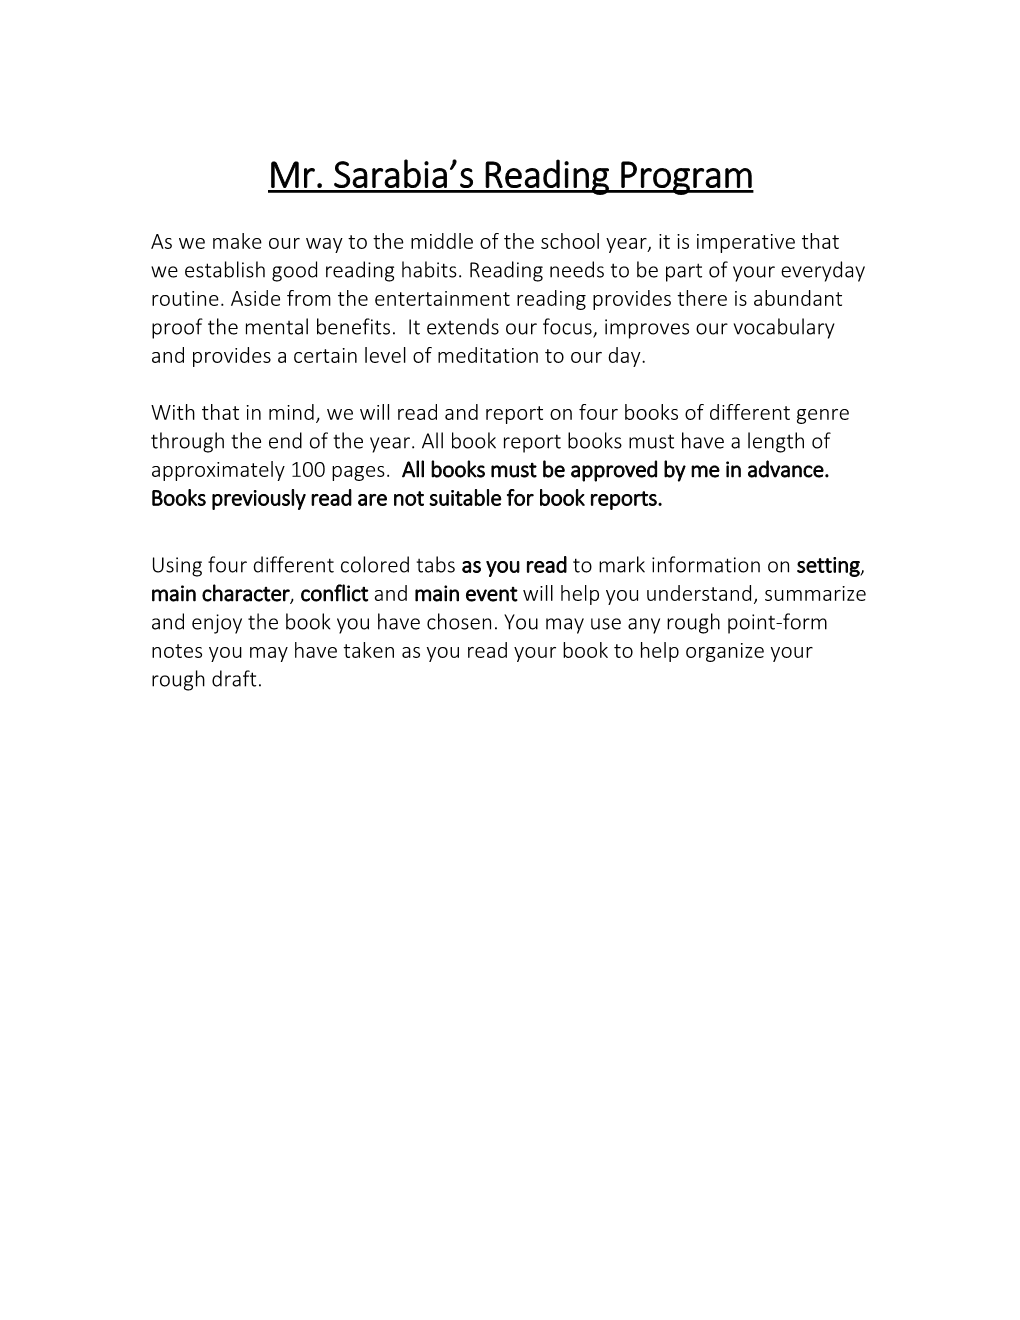 Mr. Sarabia's Reading Program1